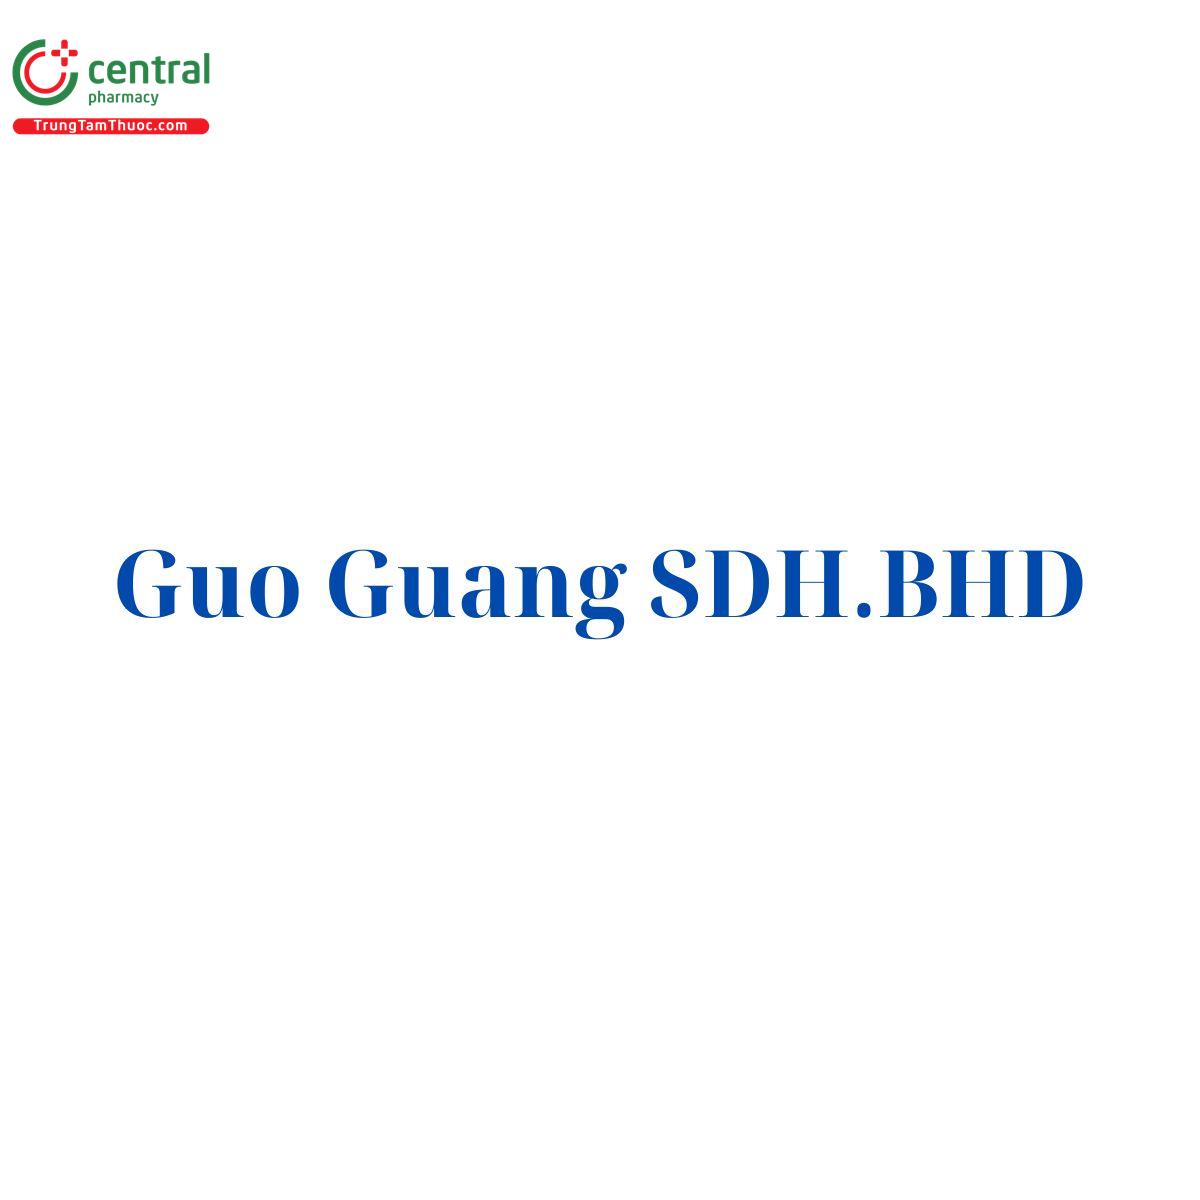 Guo Guang SDH.BHD